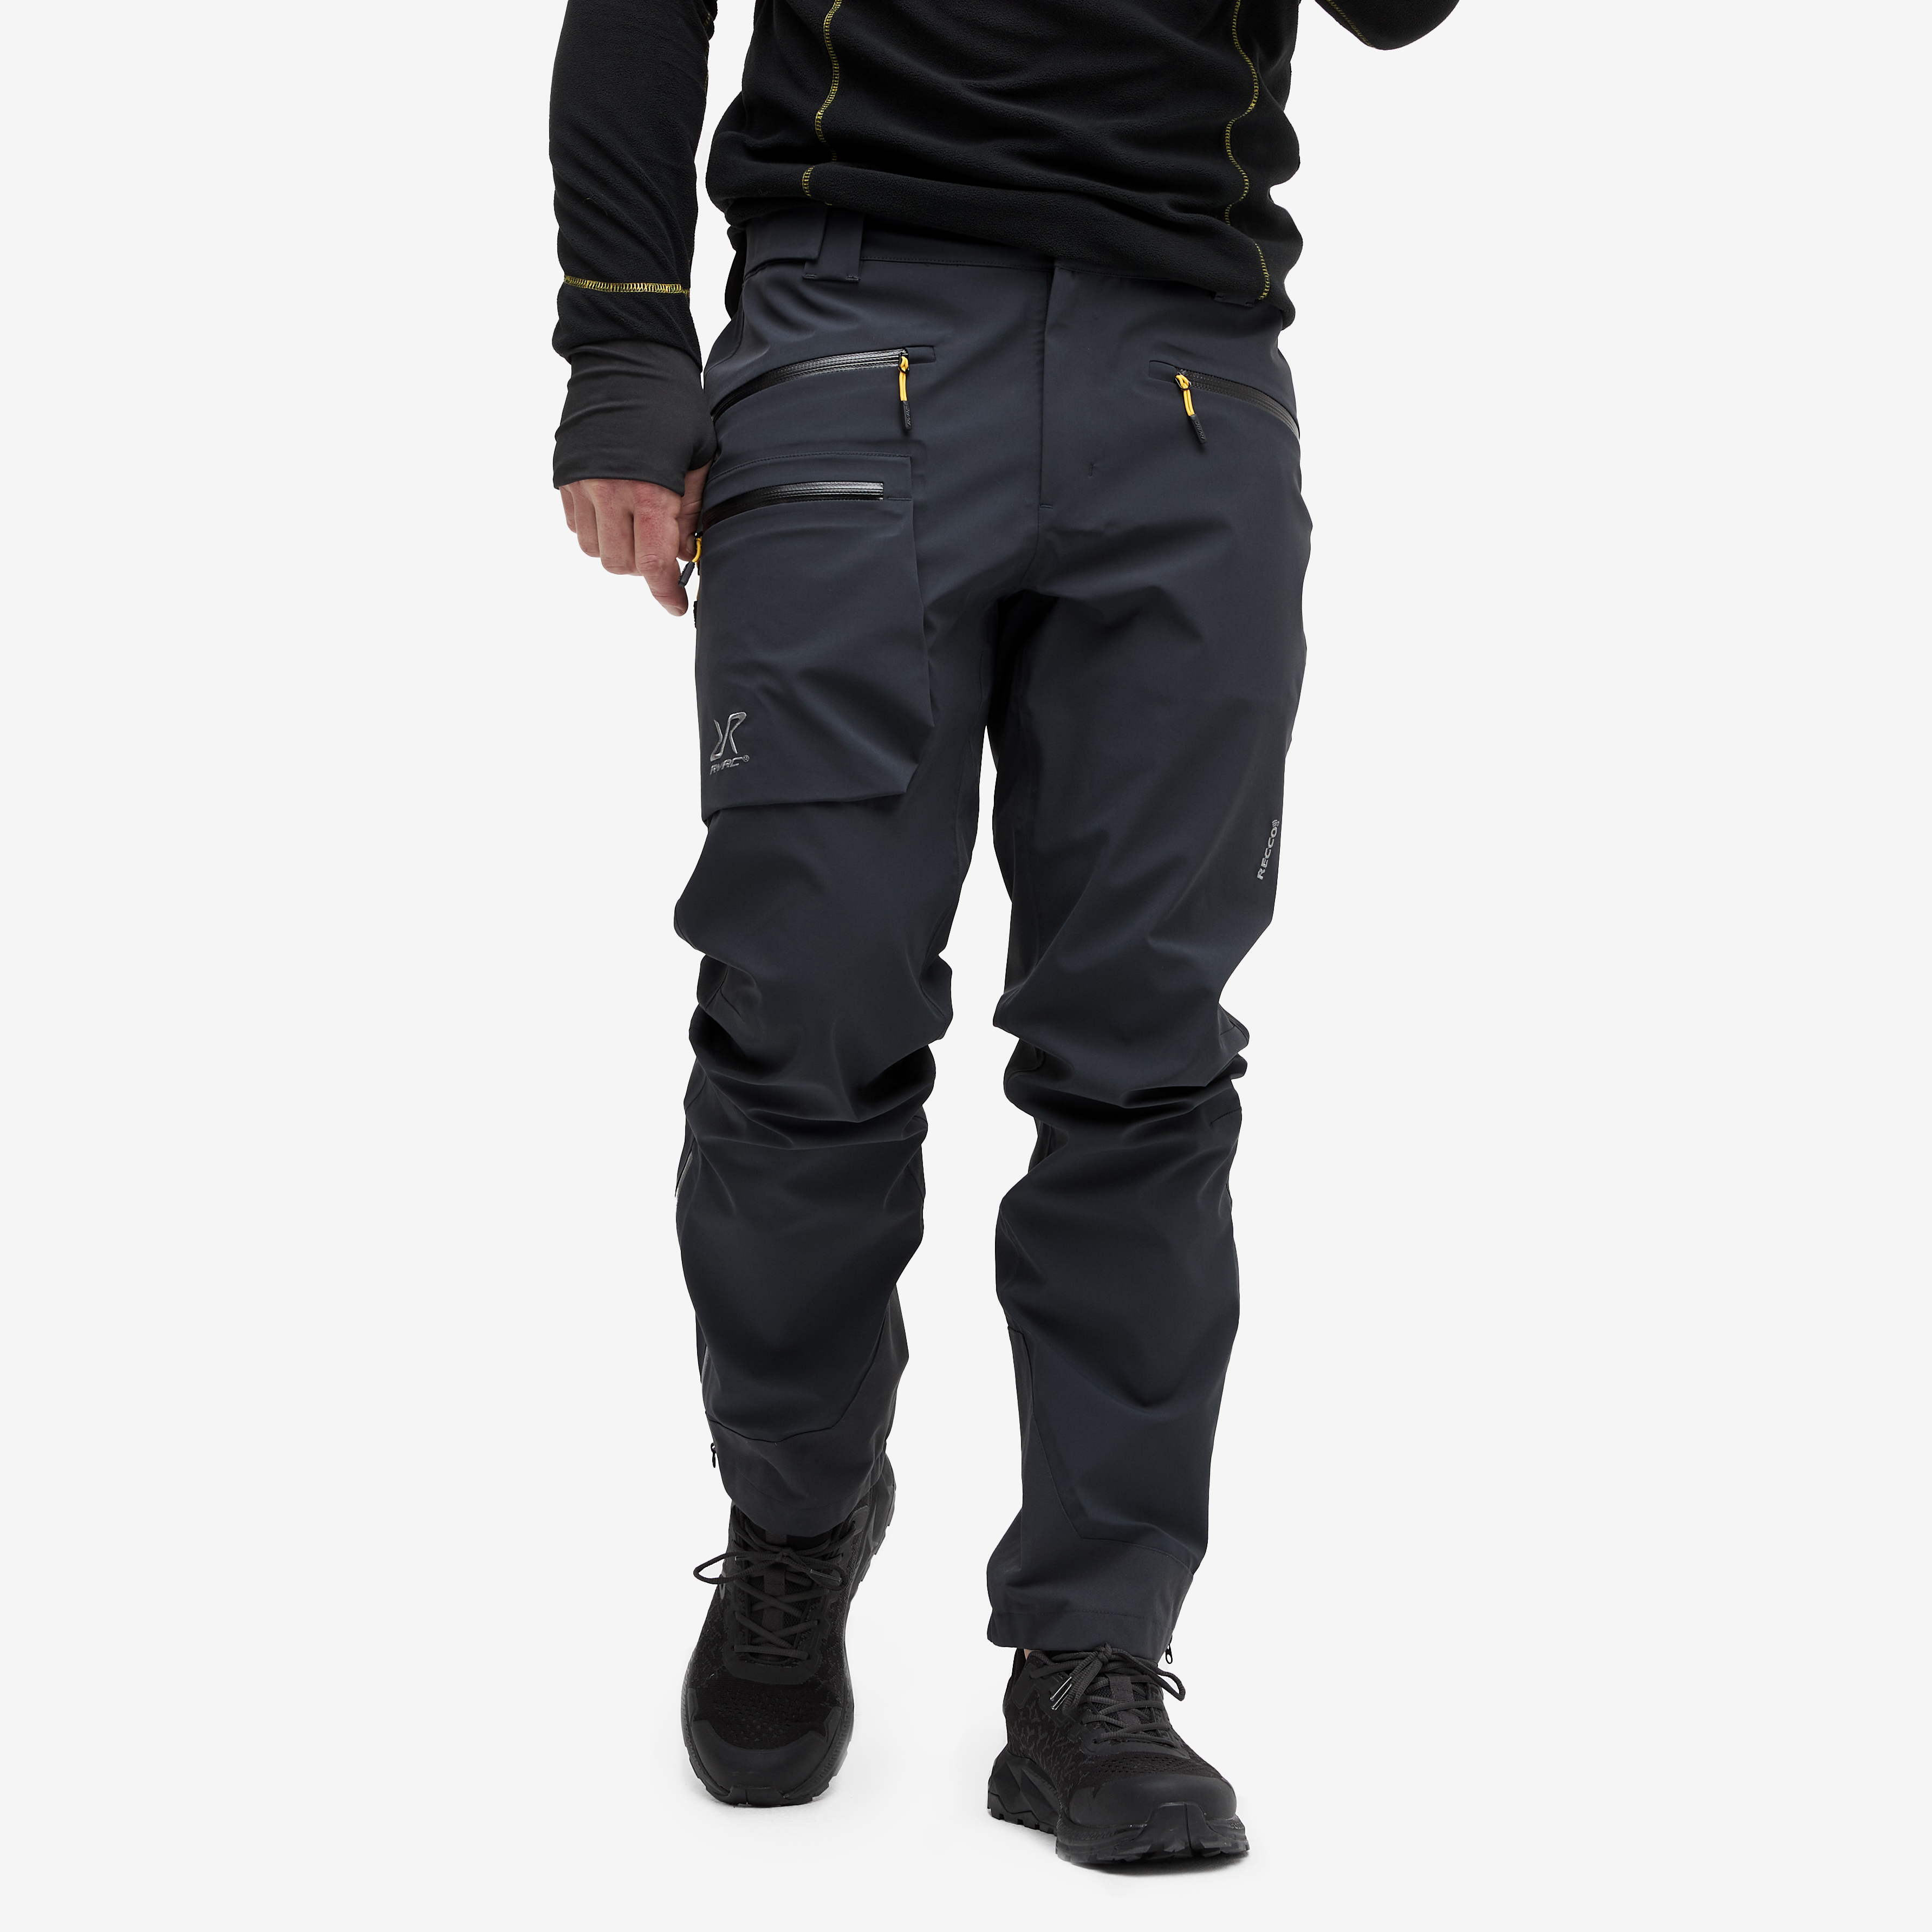 Aphex Pro Pants Charcoal Black Homme